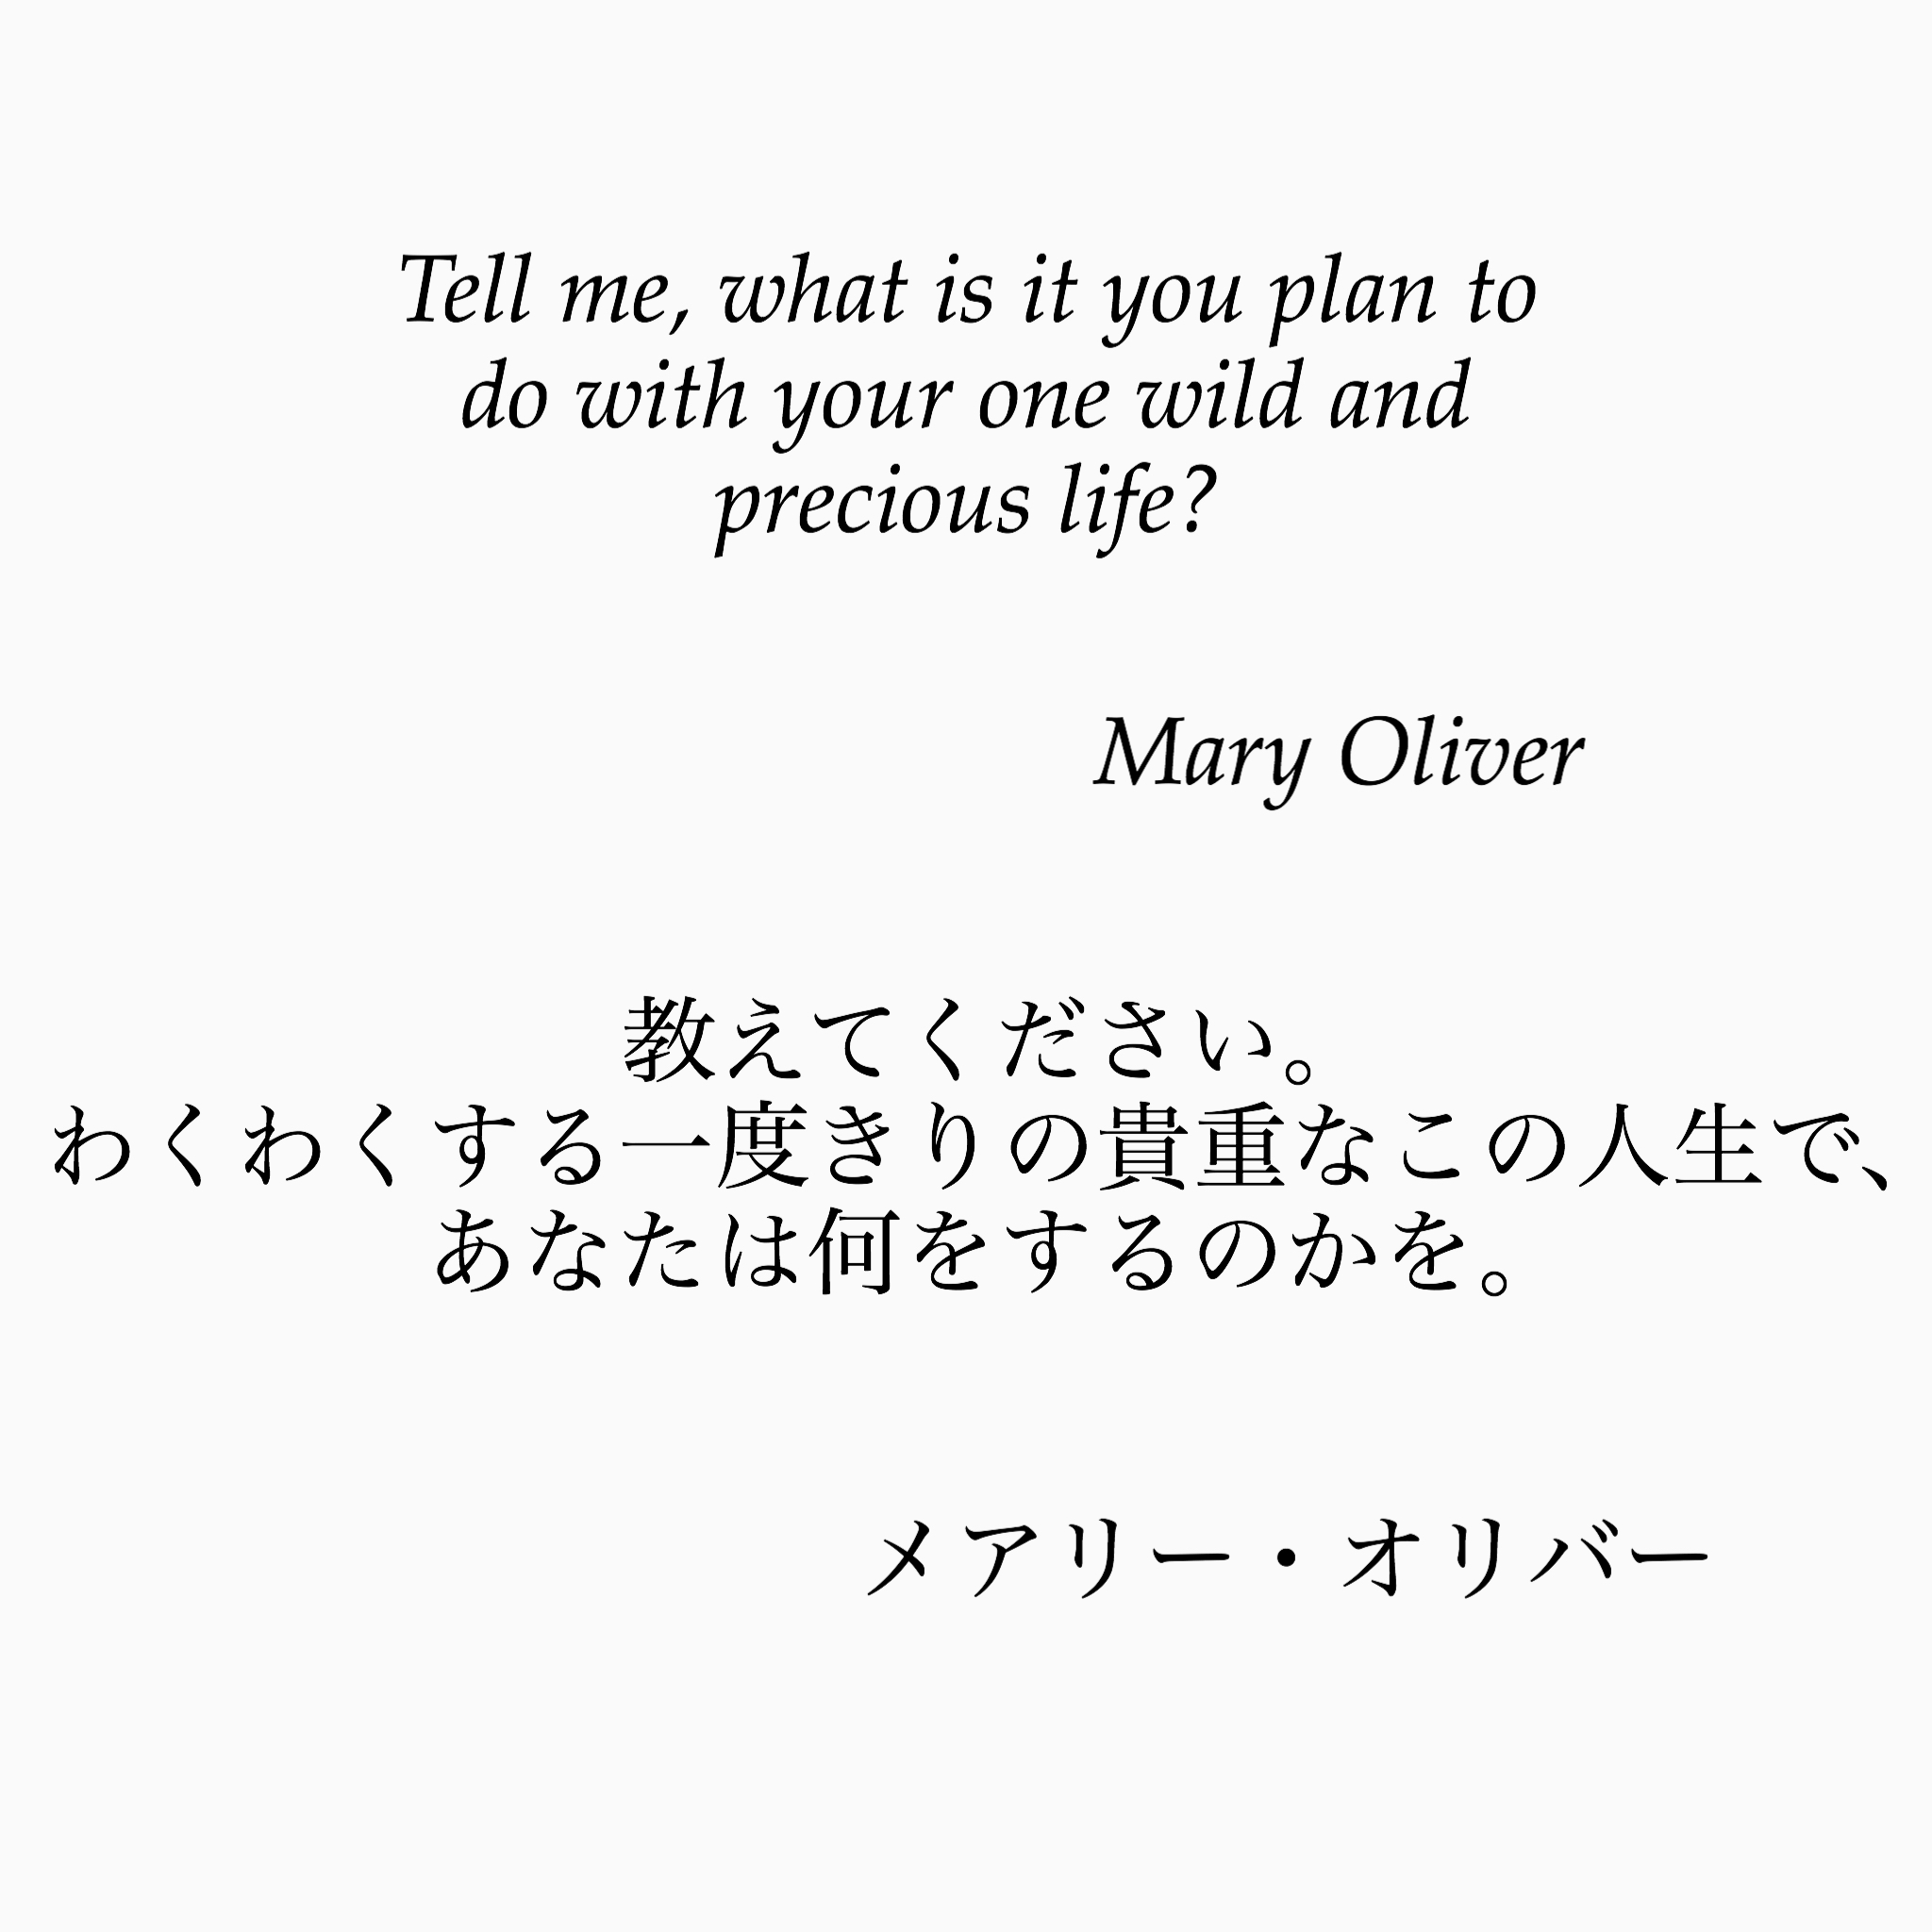 旧ゆったり名言書写 No 45 本日の名言は 米国の詩人メアリー オリバーの言葉です この言葉は ハーバード大学の卒業式でも引用されました ゆったり名言書写 T Co Anmsbdqpqv Twitter